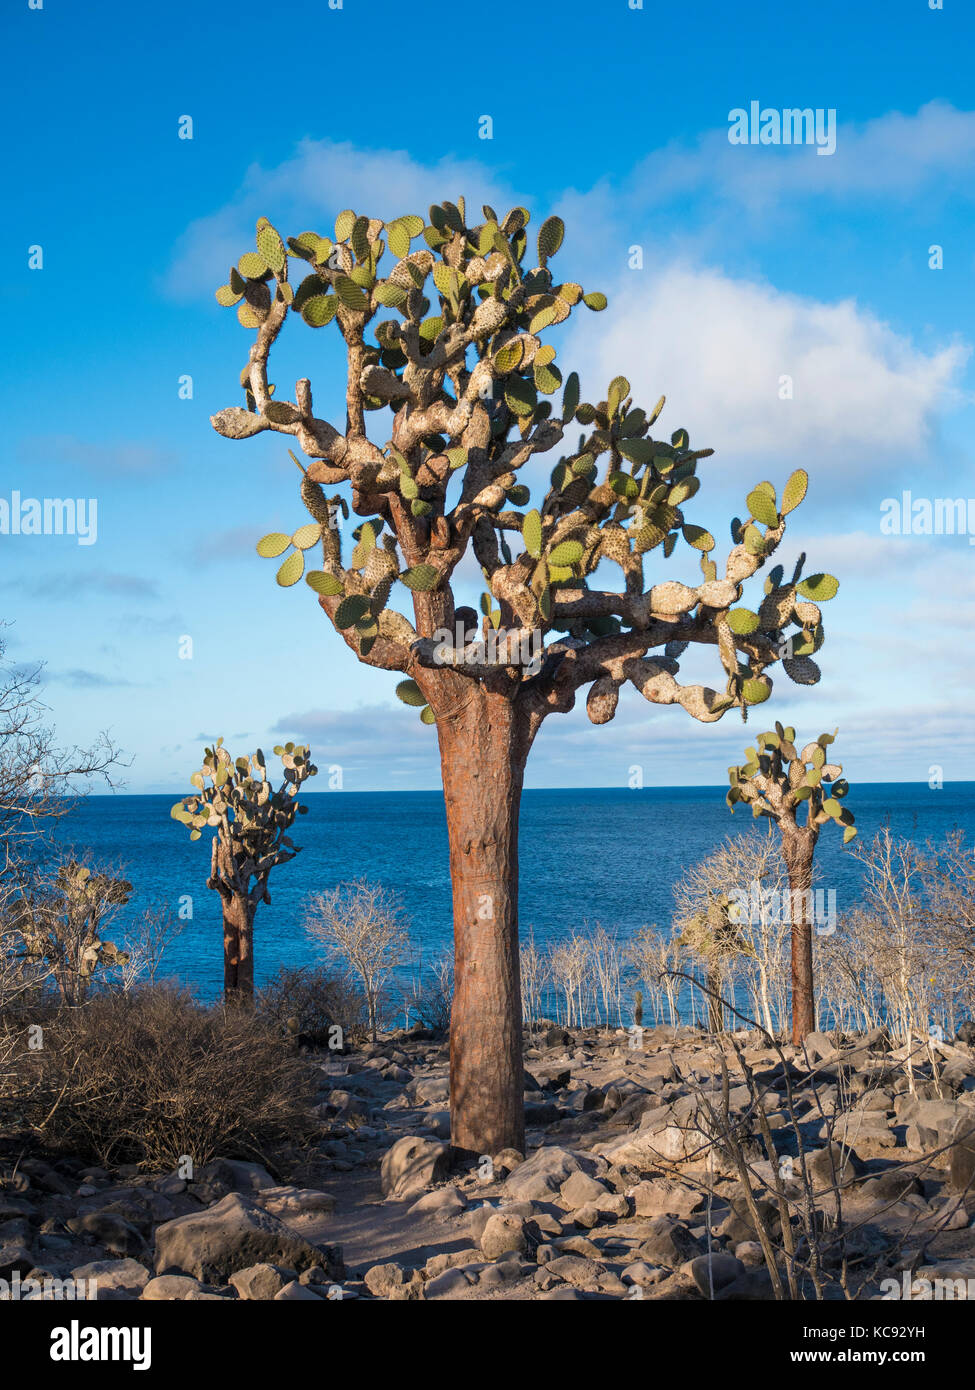 Arbres cactus sur l'île de Santa Fe - Galapagos, Equateur Banque D'Images